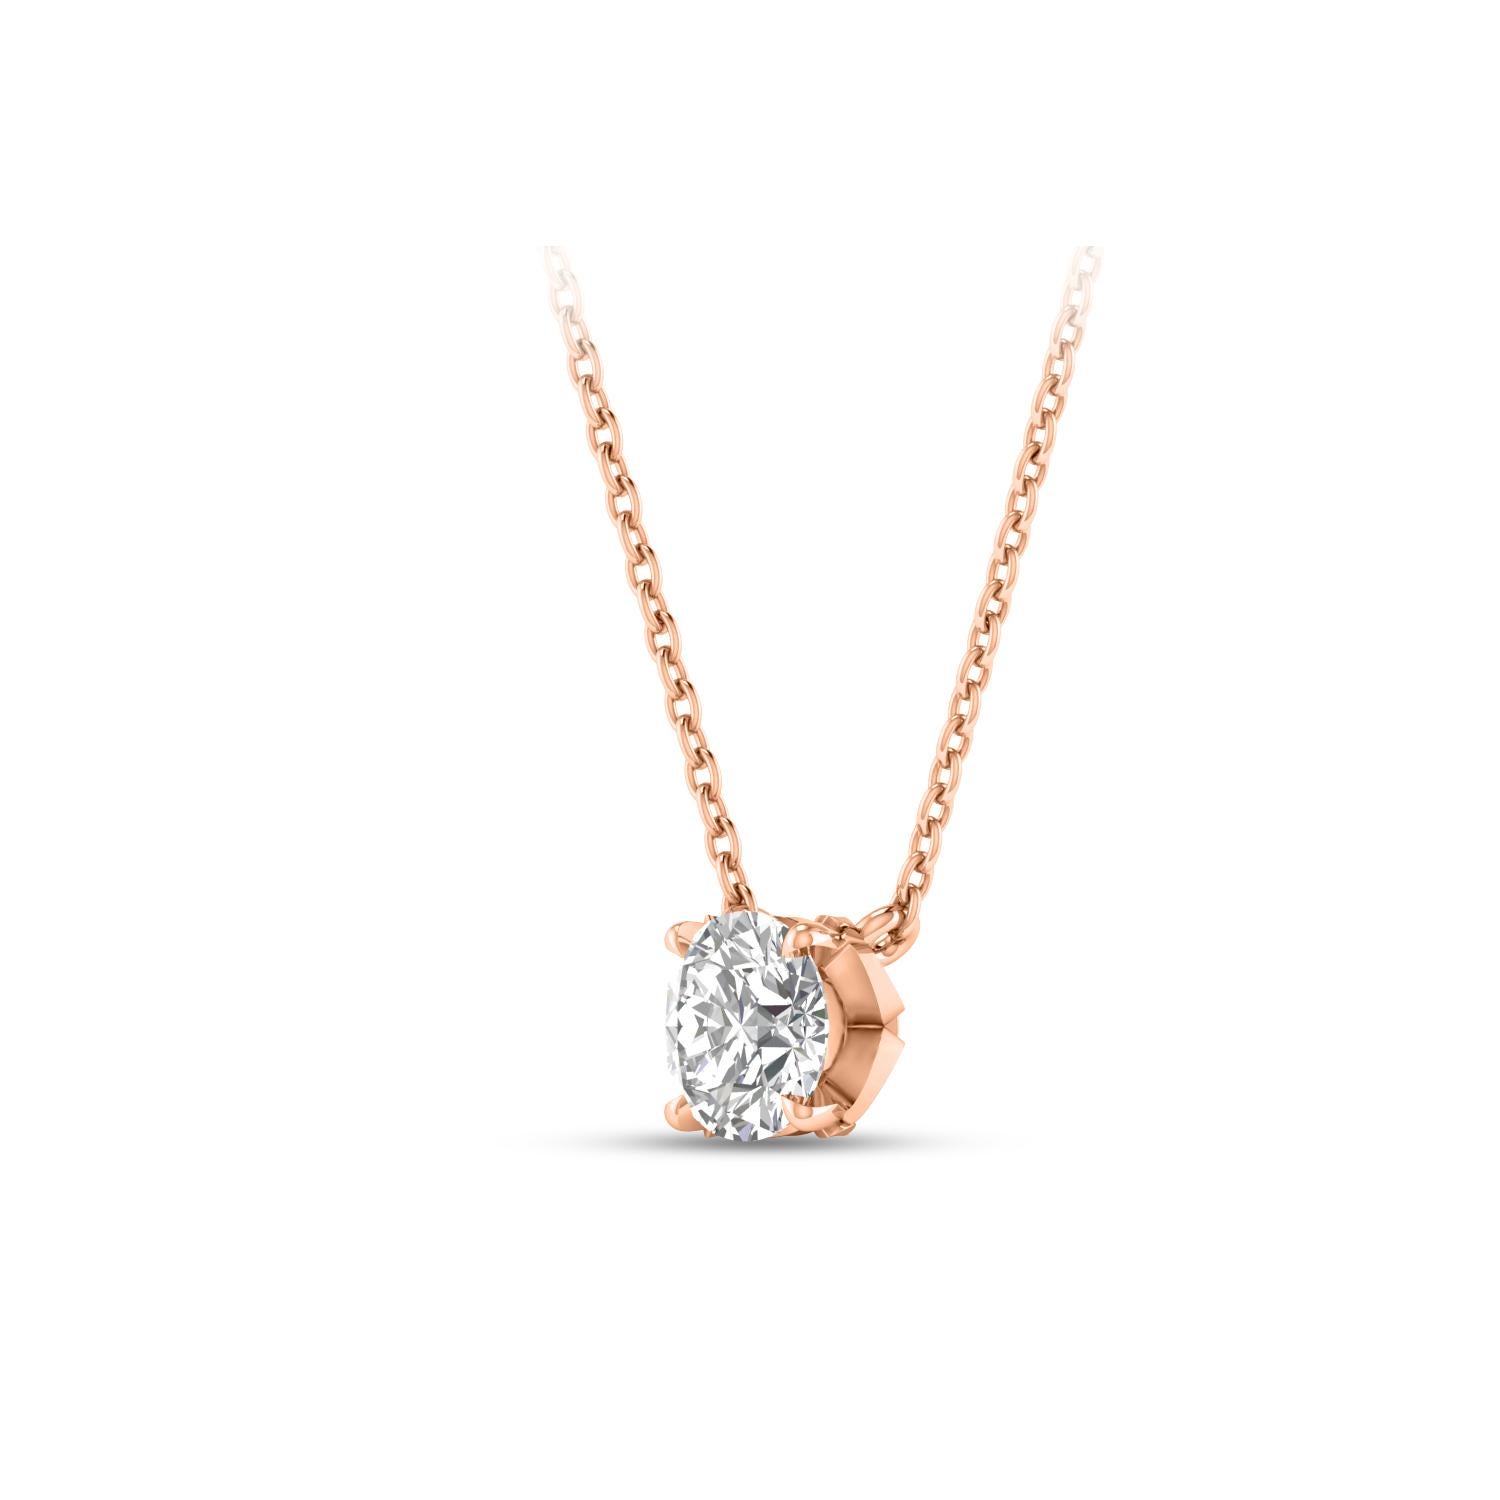  Dieses Solitär-Diamantencollier besteht aus einem einzelnen Diamanten im Brillantschliff von 0,27 Karat in einer Zackenfassung aus 18 KT Roségold. Diese elegante Halskette besteht aus einer 20-Zoll-Kabelkette mit einer 18-Zoll-Verlängerung. Diese